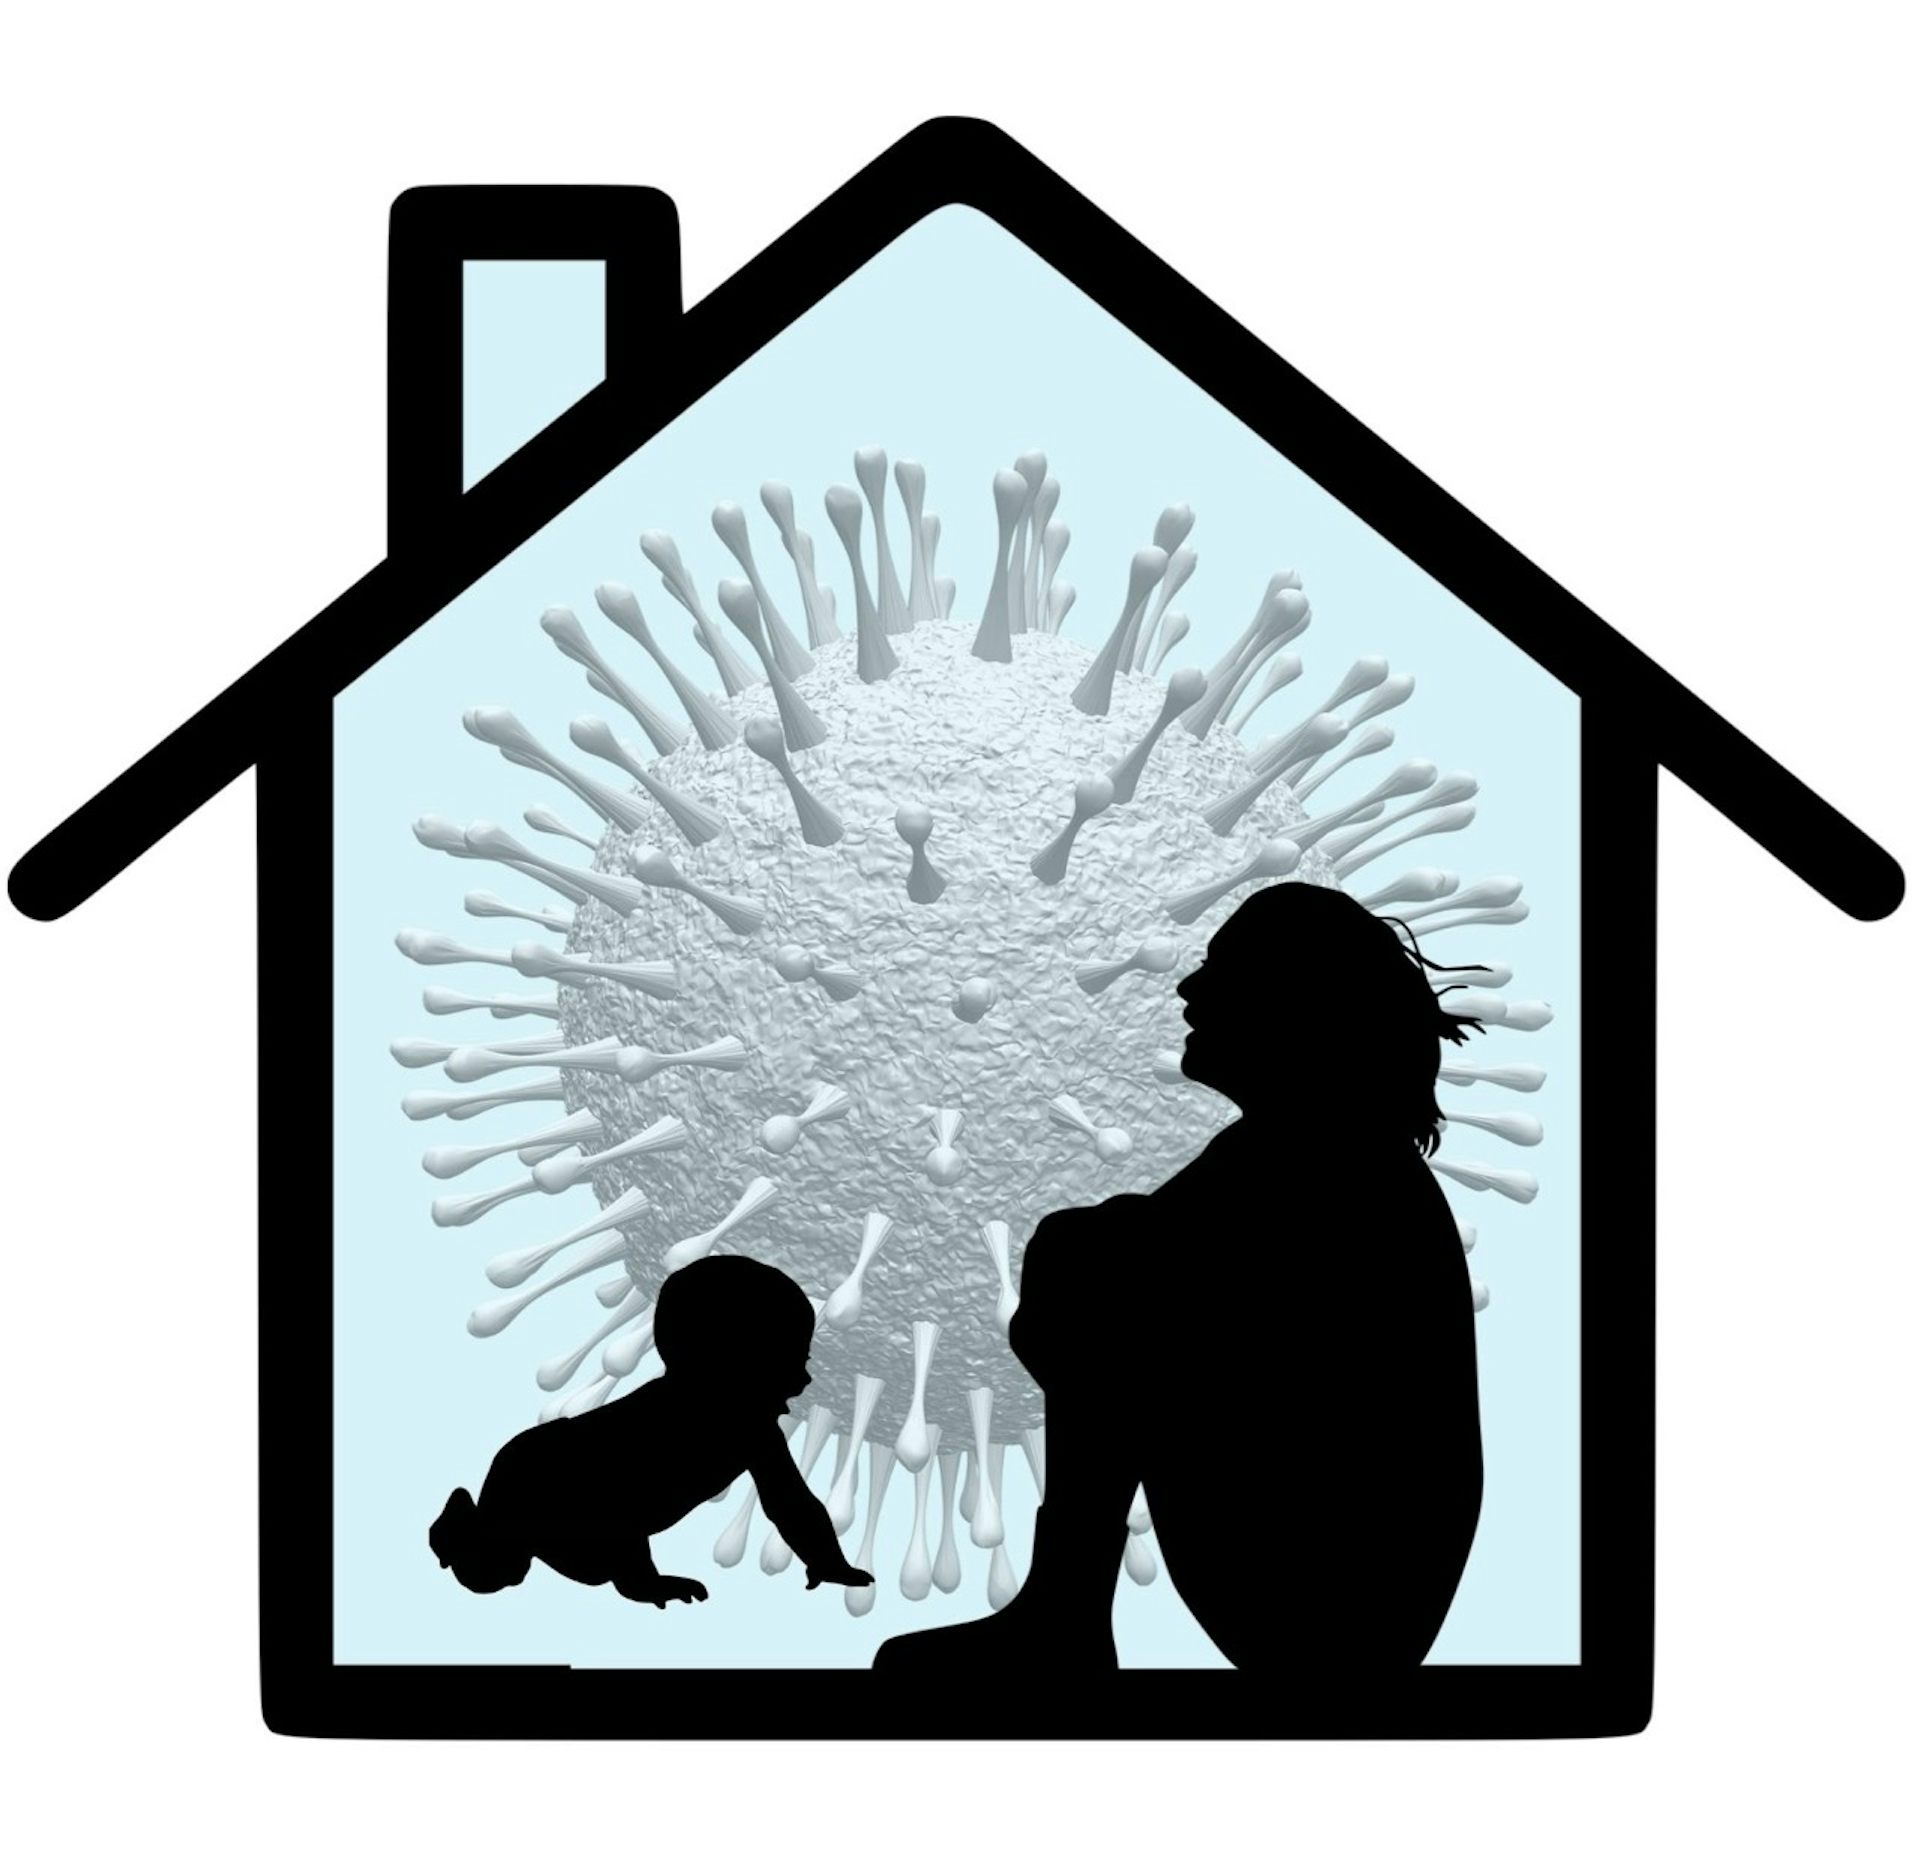 istuvan, polviaan halaavan naisen ja matelevan vauvan siluetteja vasten talon ääriviivoja ja koronaviruksen kuvaa